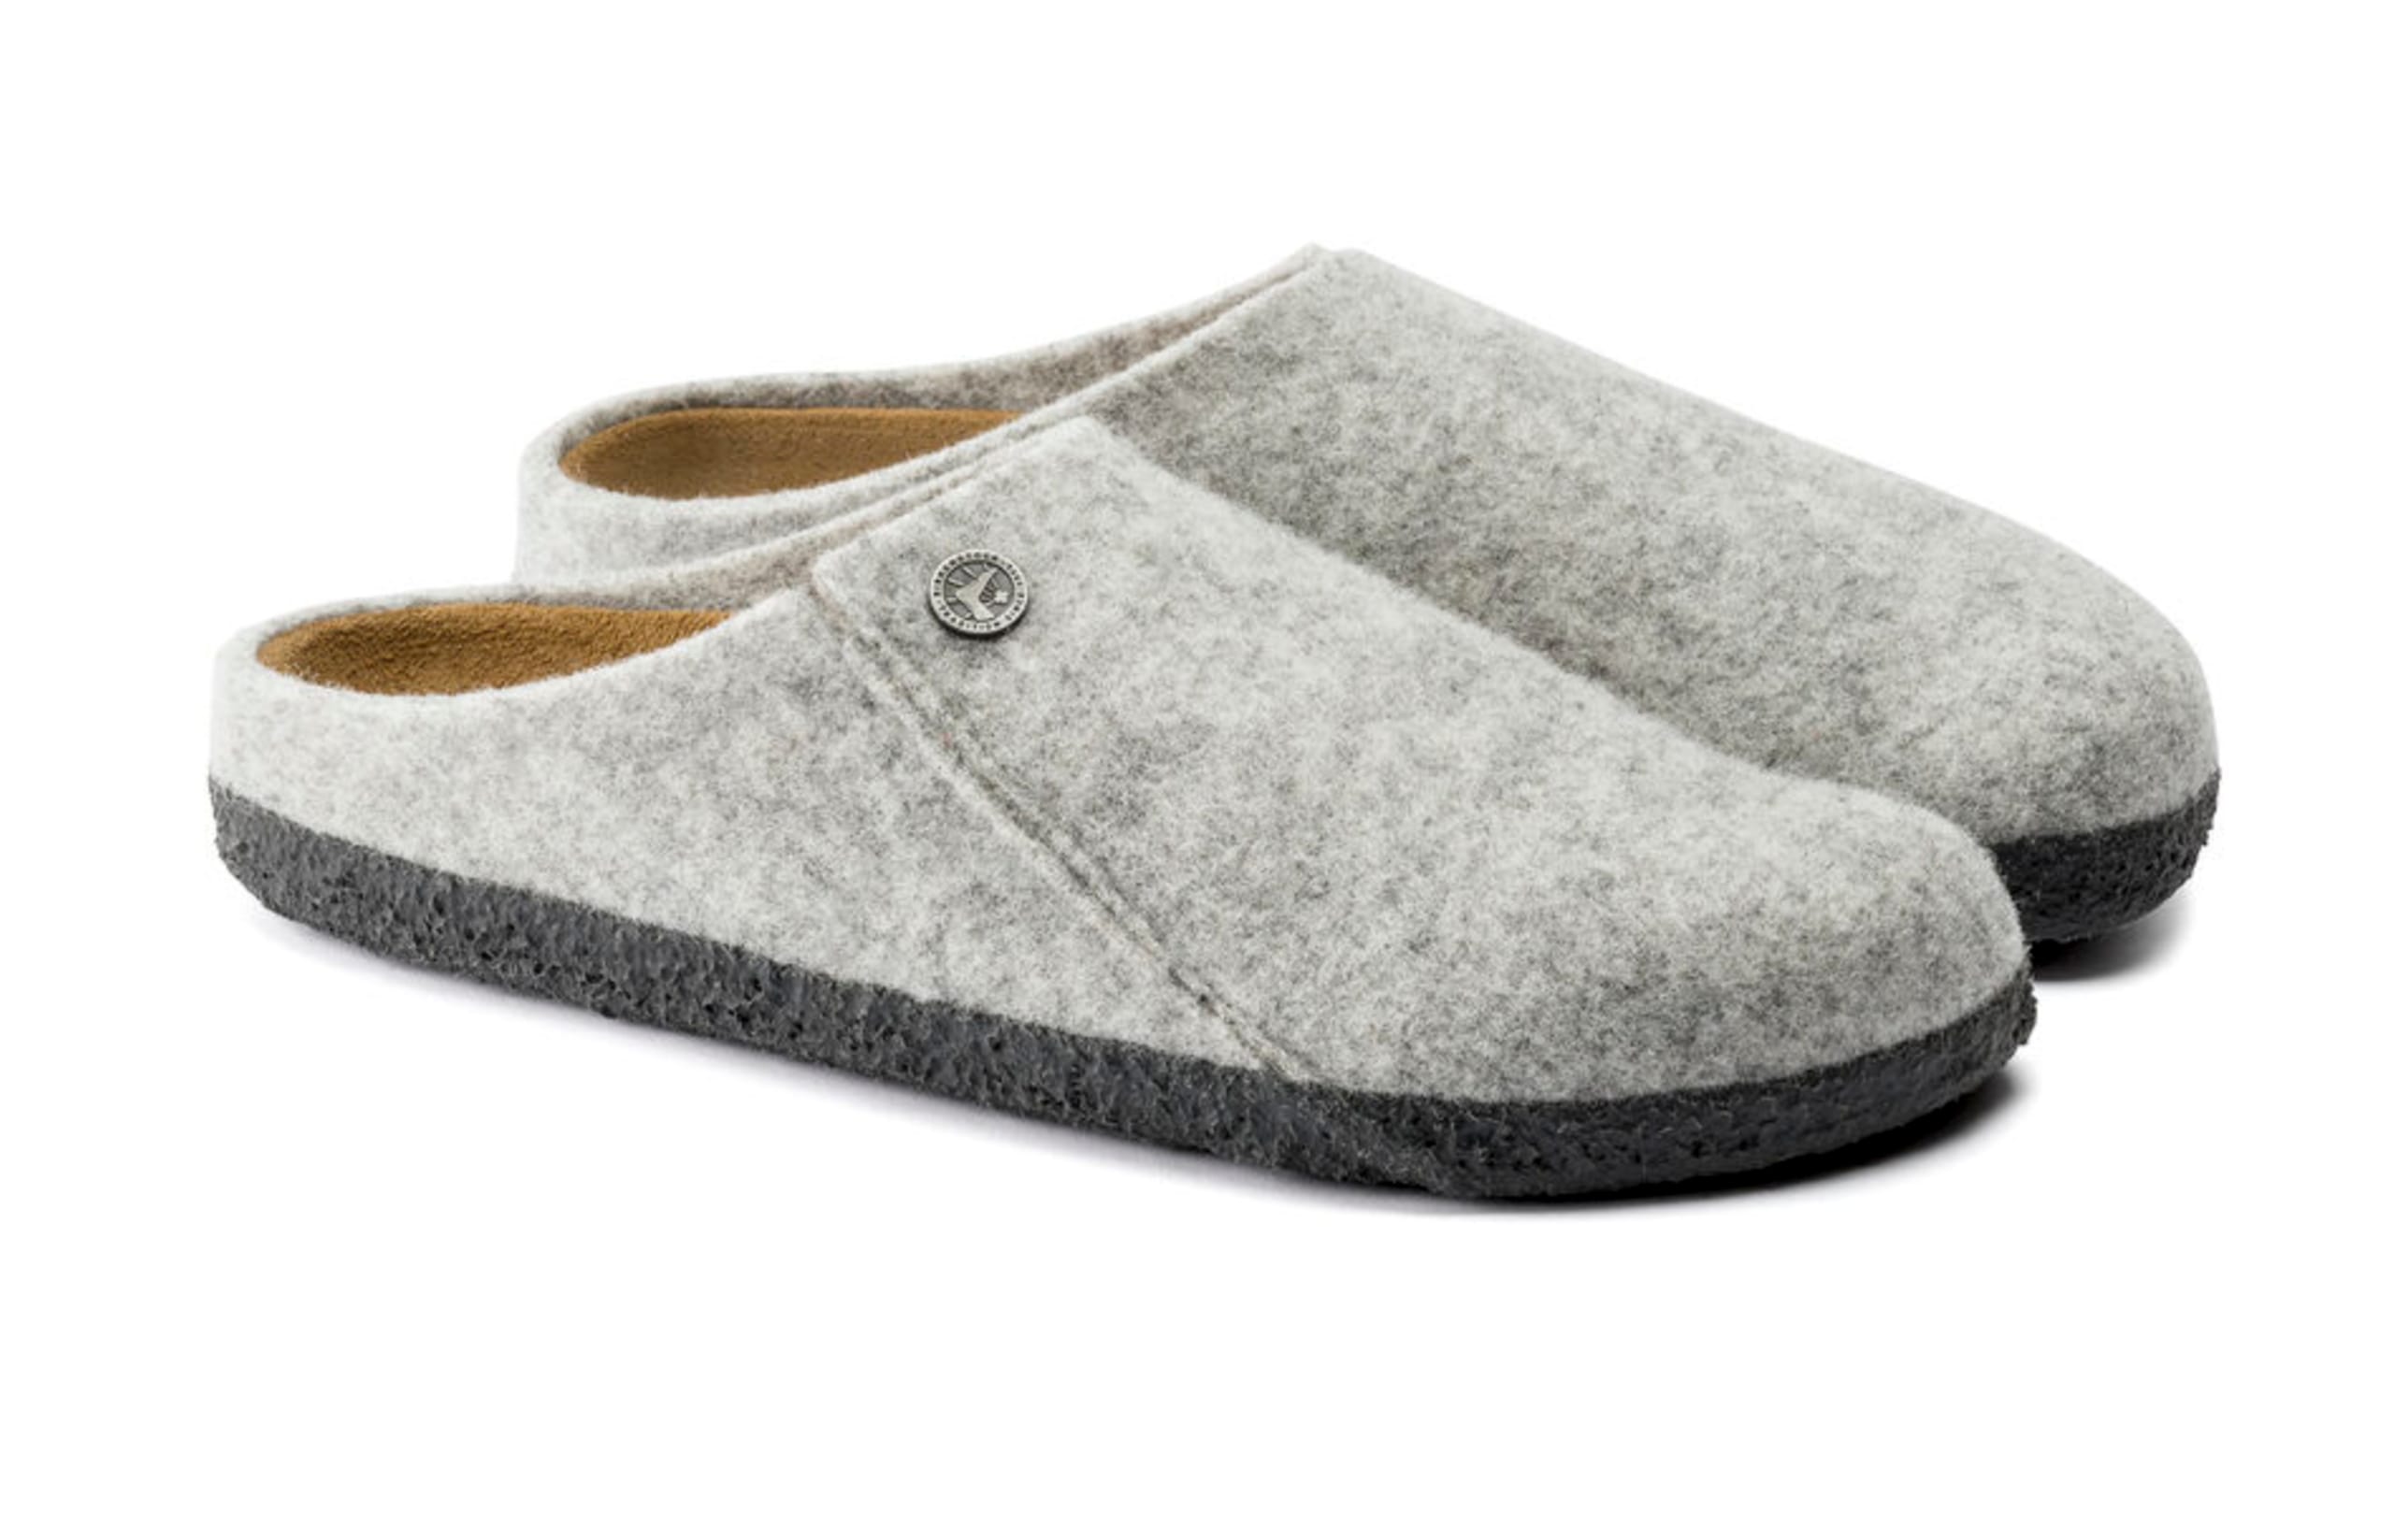 Birkenstock - Shoes - Zermatt Standard Wool Felt - Light Grey